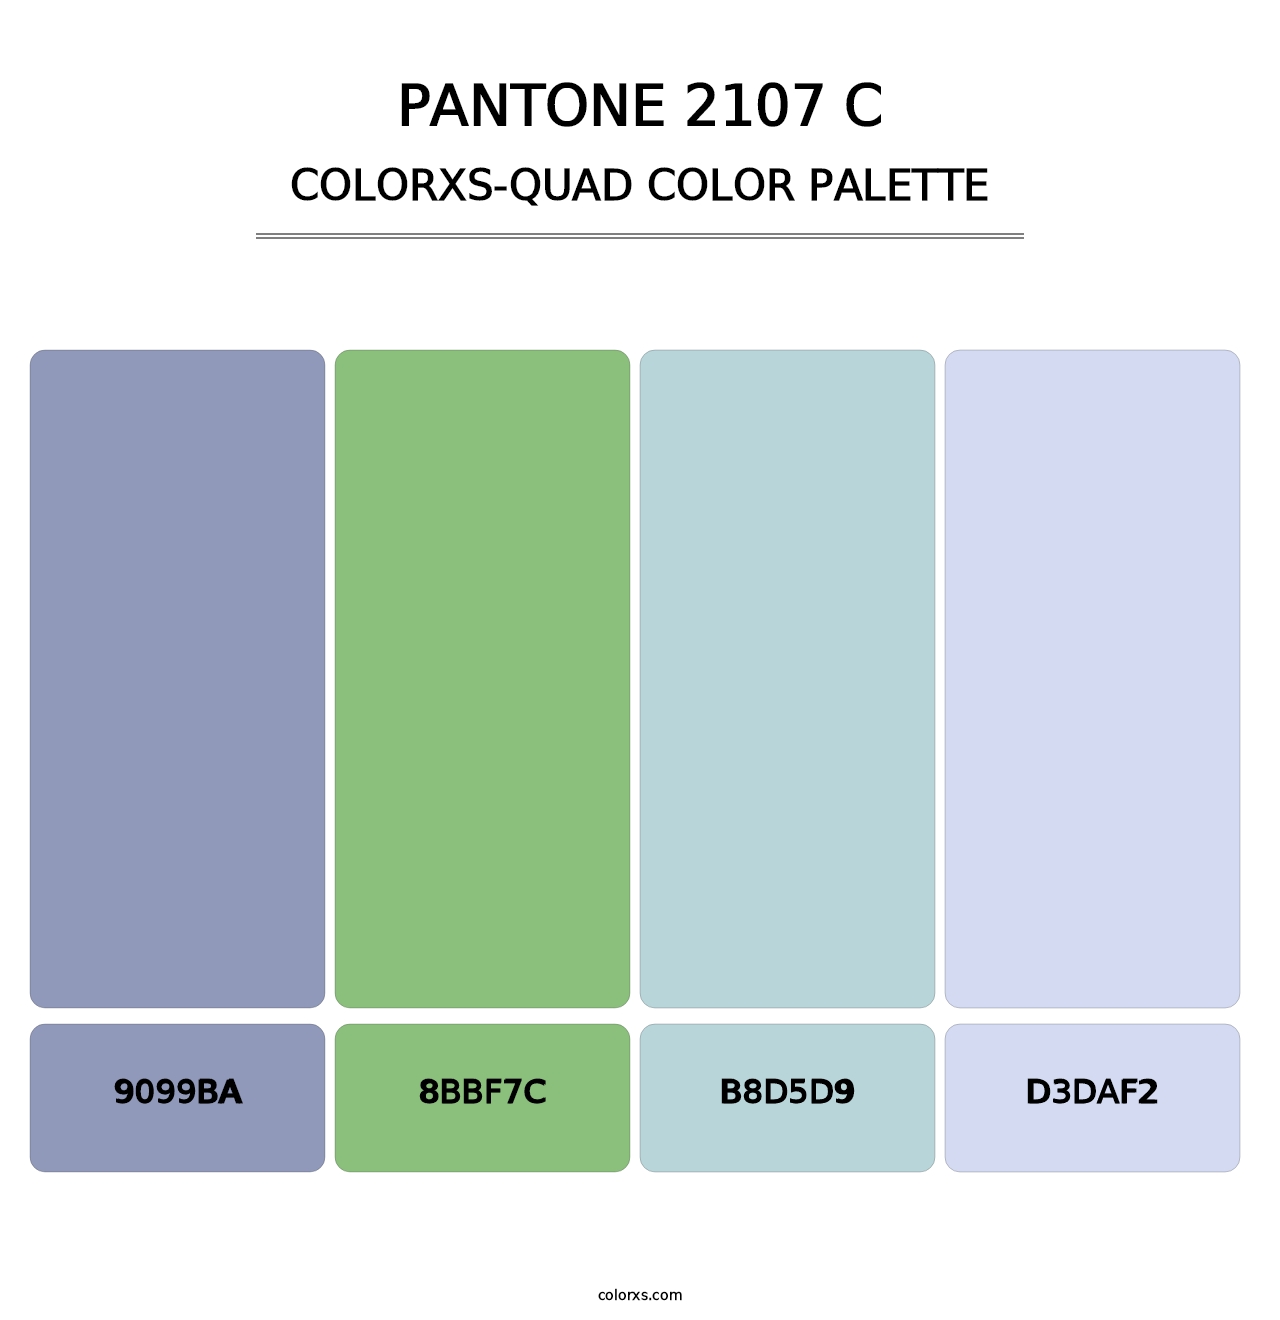 PANTONE 2107 C - Colorxs Quad Palette